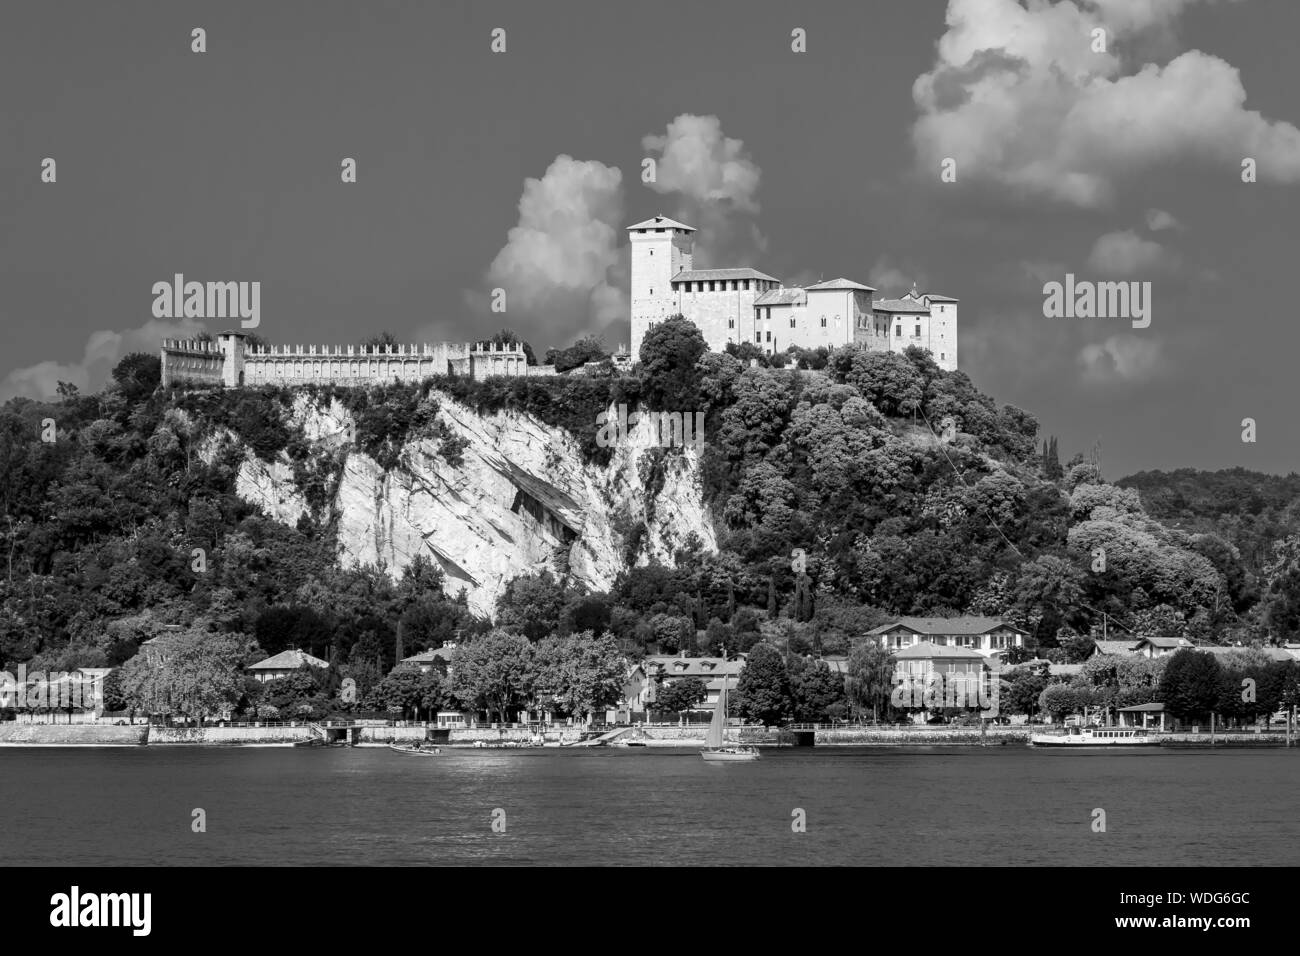 Belle vue en noir et blanc de la Rocca di Angera, Varese, sur le Lac Majeur, Italie Banque D'Images